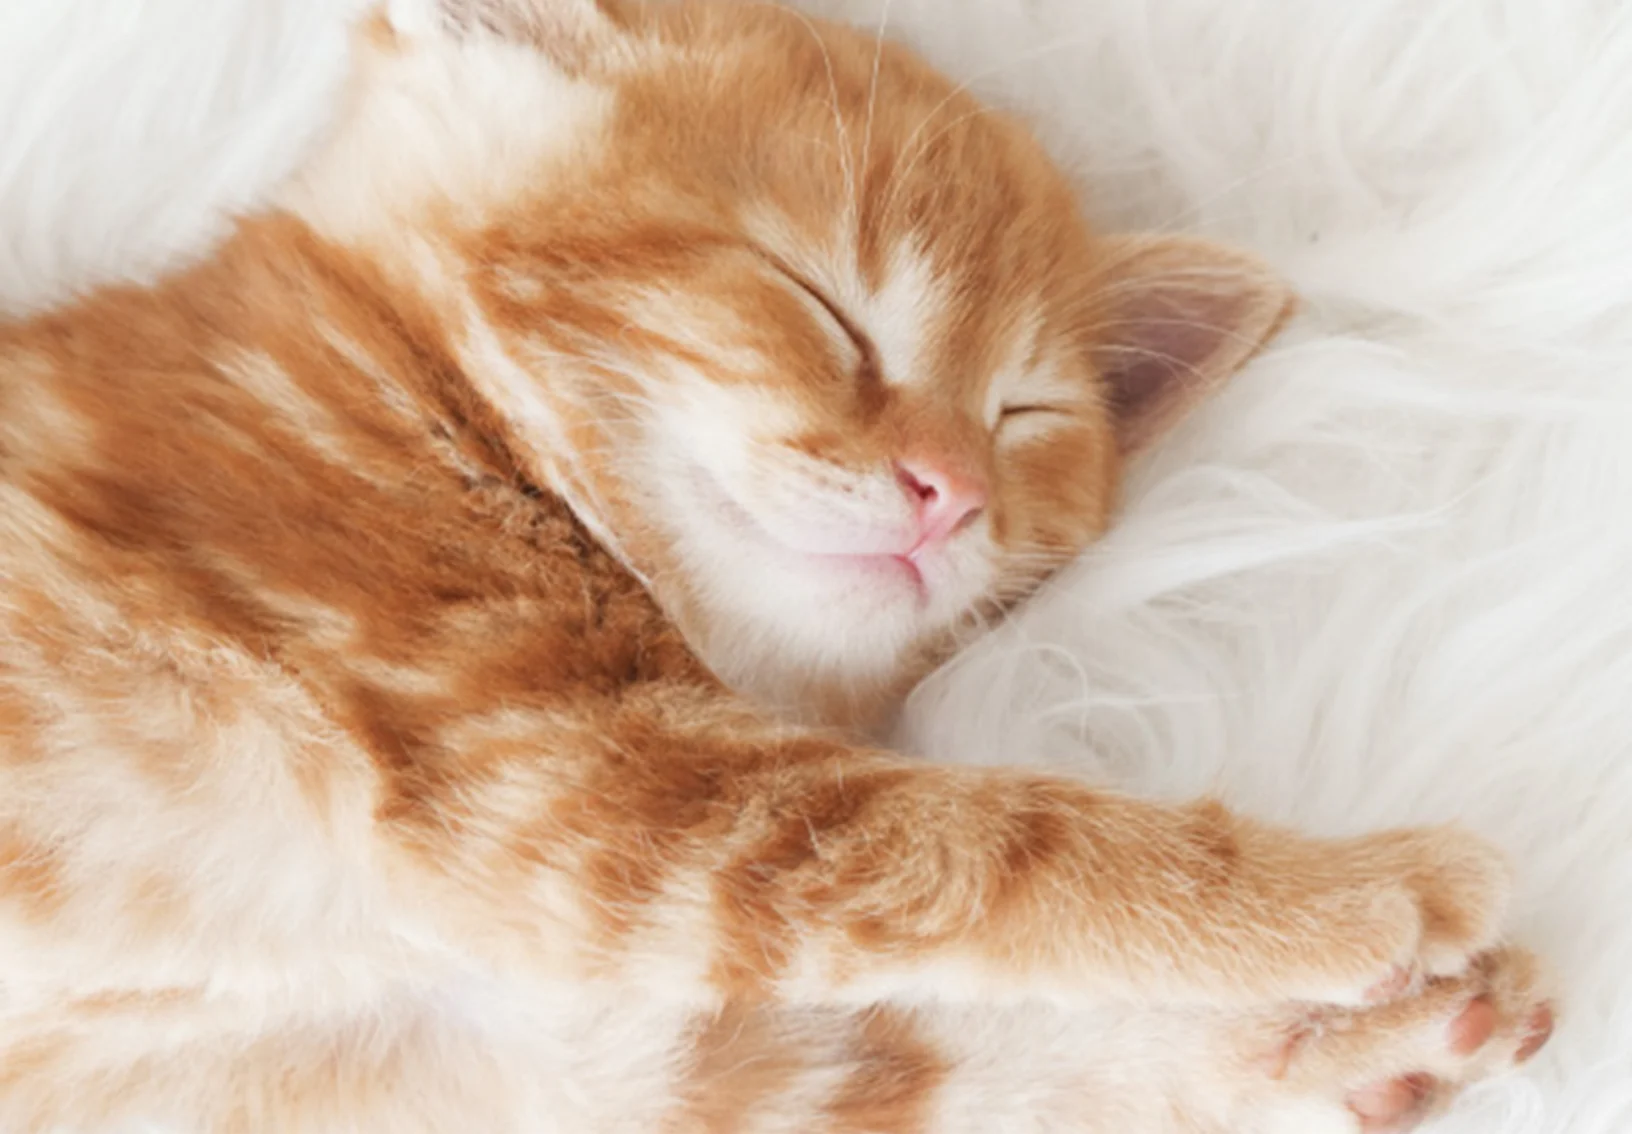 An orange kitten stretching